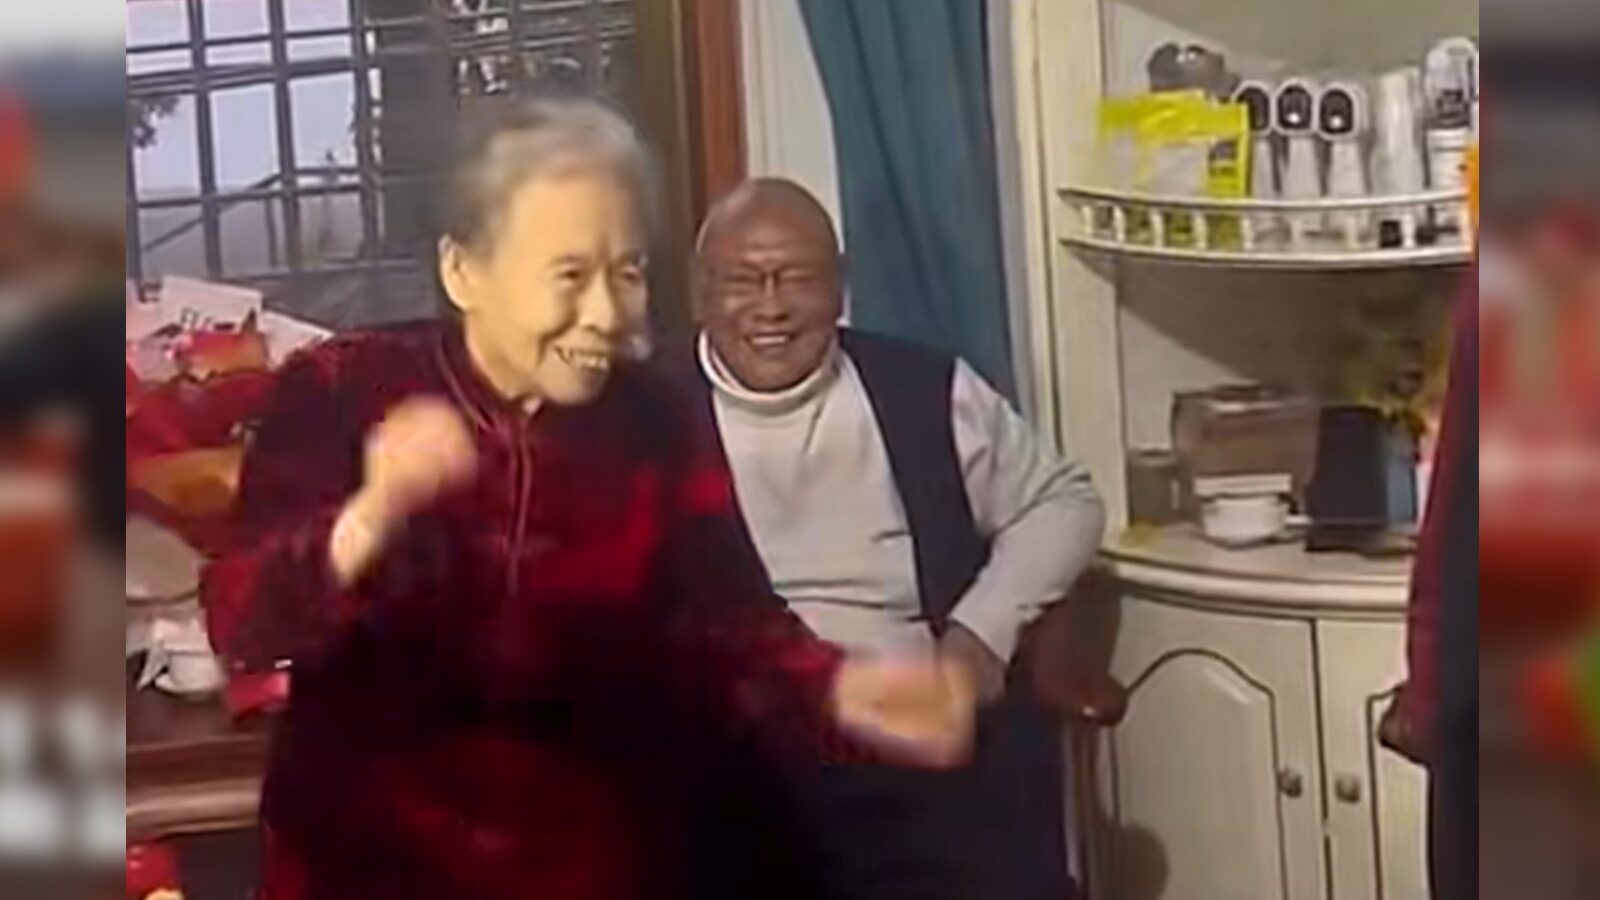 ปู่วัย 86 วิวาห์ชื่นมื่นกับรักแรกสมัยเรียน แม้เวลาจะผันผ่าน คู่กันแล้วคงไม่แคล้วกัน